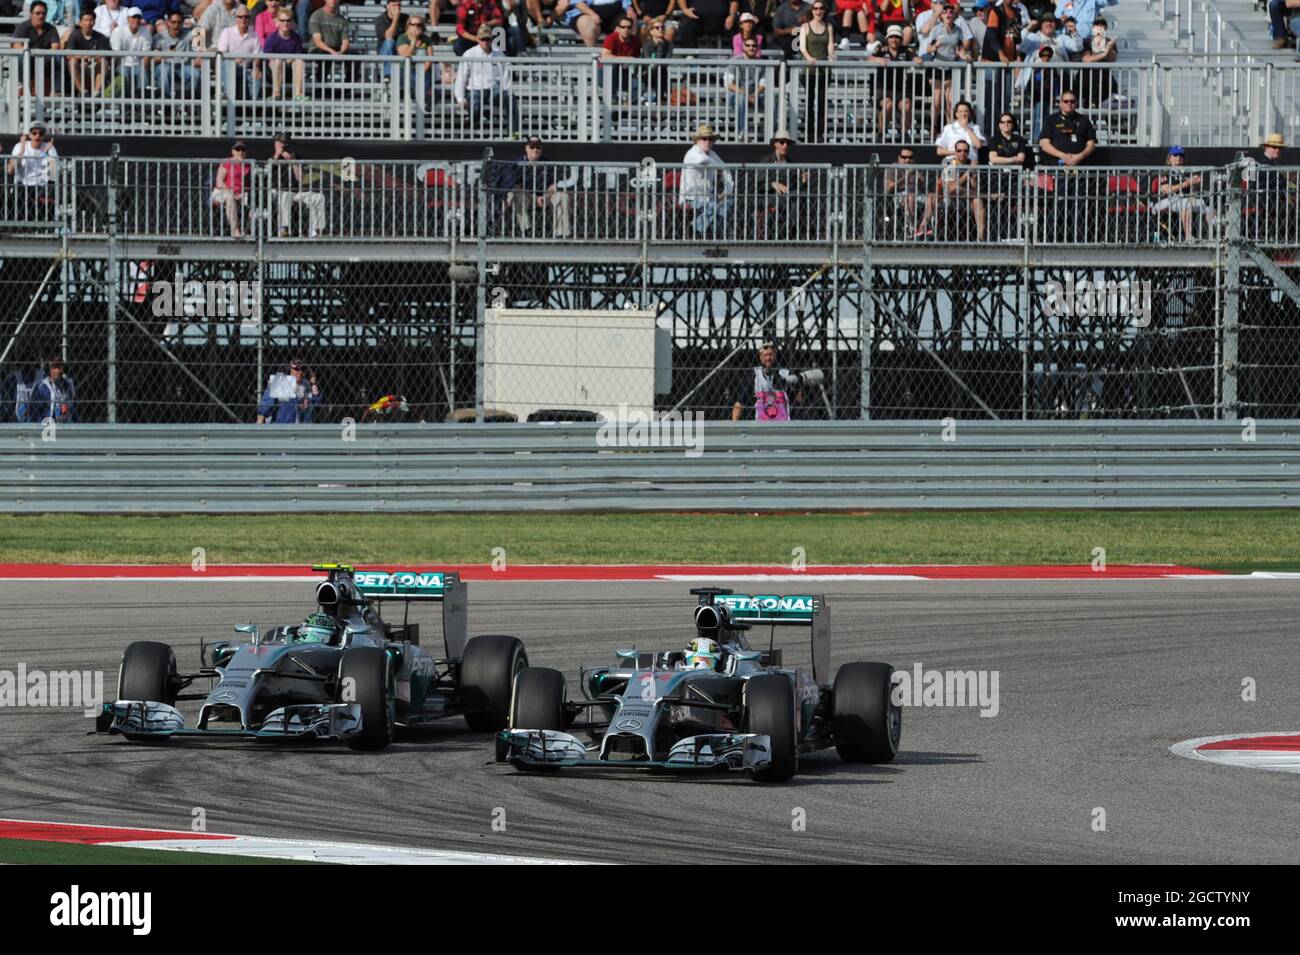 Lewis Hamilton (GBR) Mercedes AMG F1 W05 pasa al compañero de equipo Nico Rosberg (GER) Mercedes AMG F1 W05 para tomar la delantera de la carrera. Gran Premio de los Estados Unidos, domingo 2nd de noviembre de 2014. Circuito de las Américas, Austin, Texas, Estados Unidos. Foto de stock